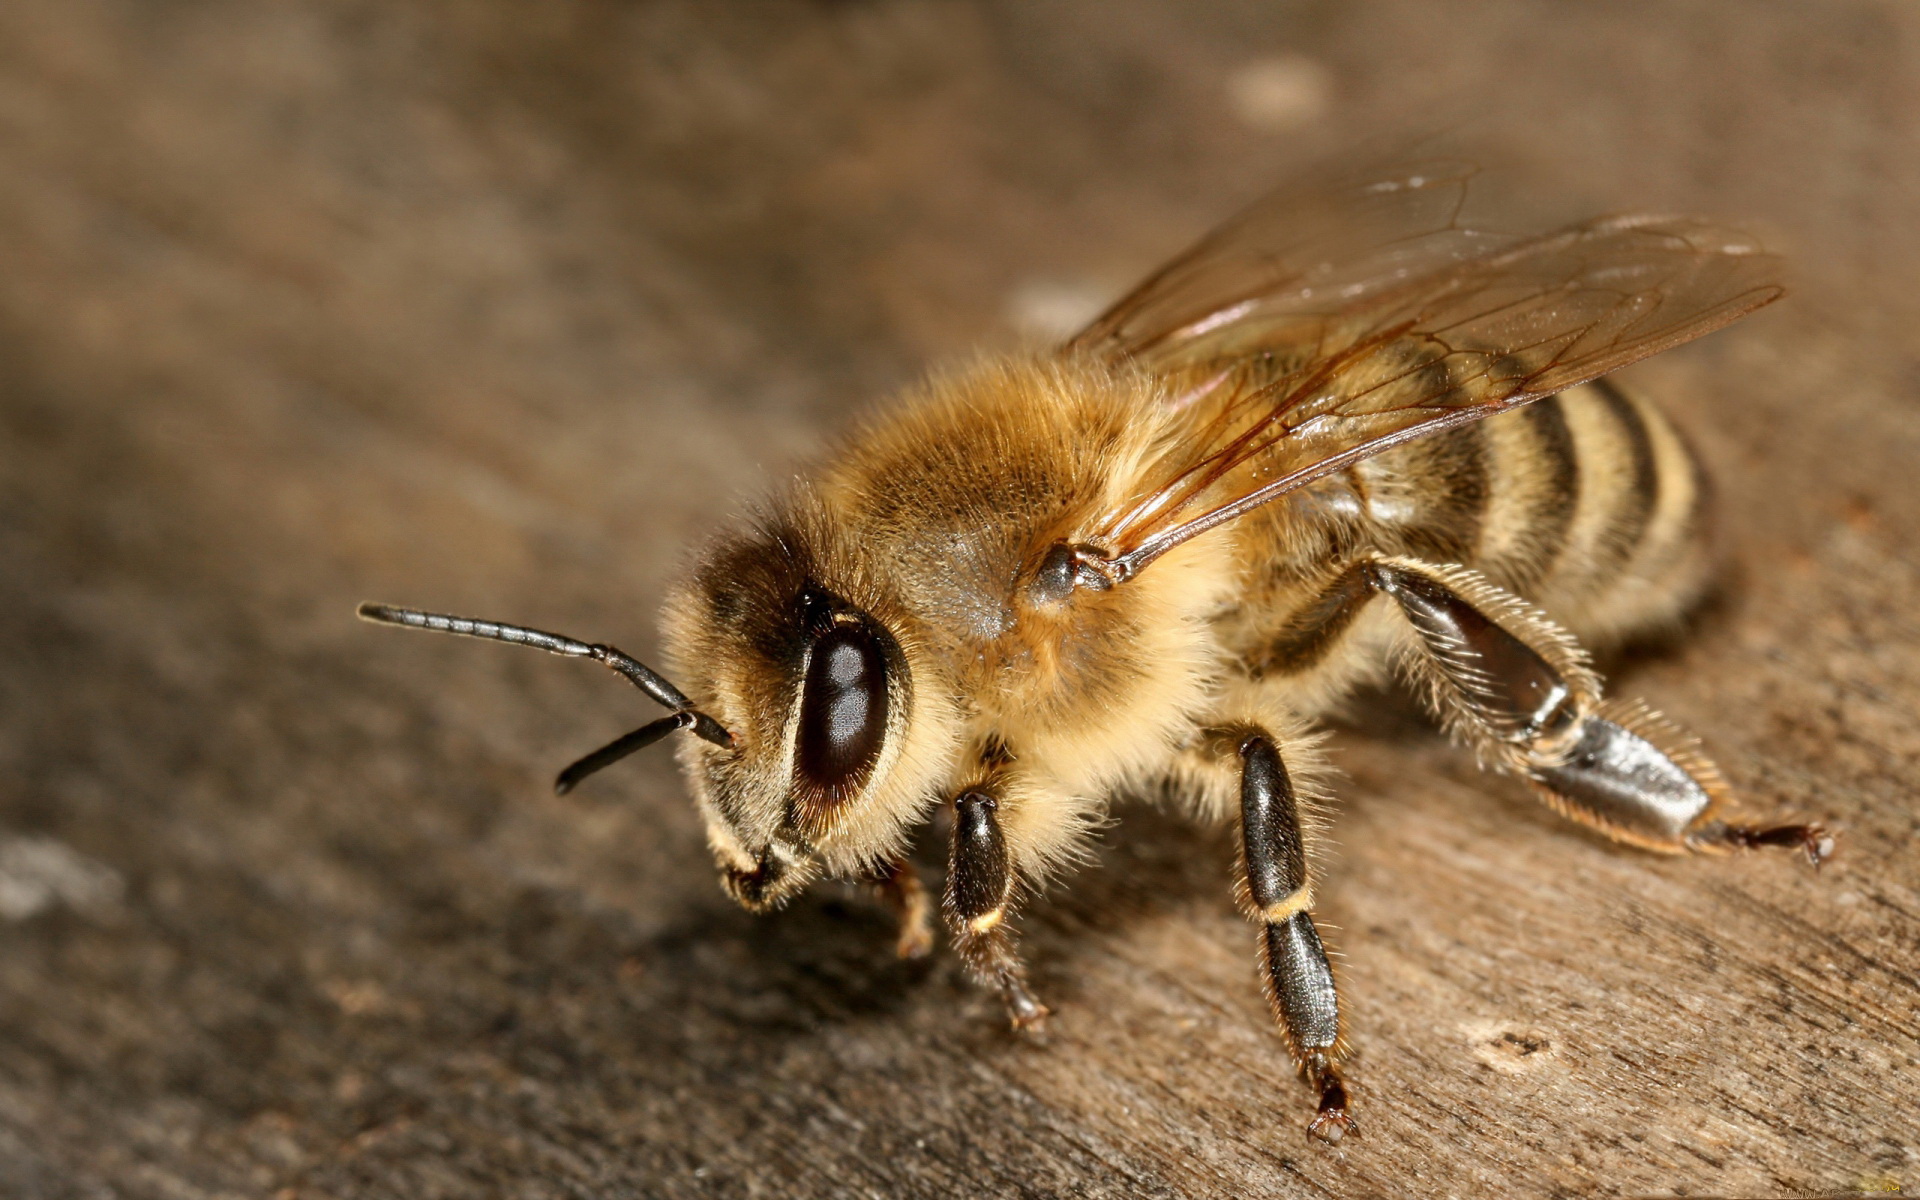 Скачать обои бесплатно Животные, Пчела картинка на рабочий стол ПК